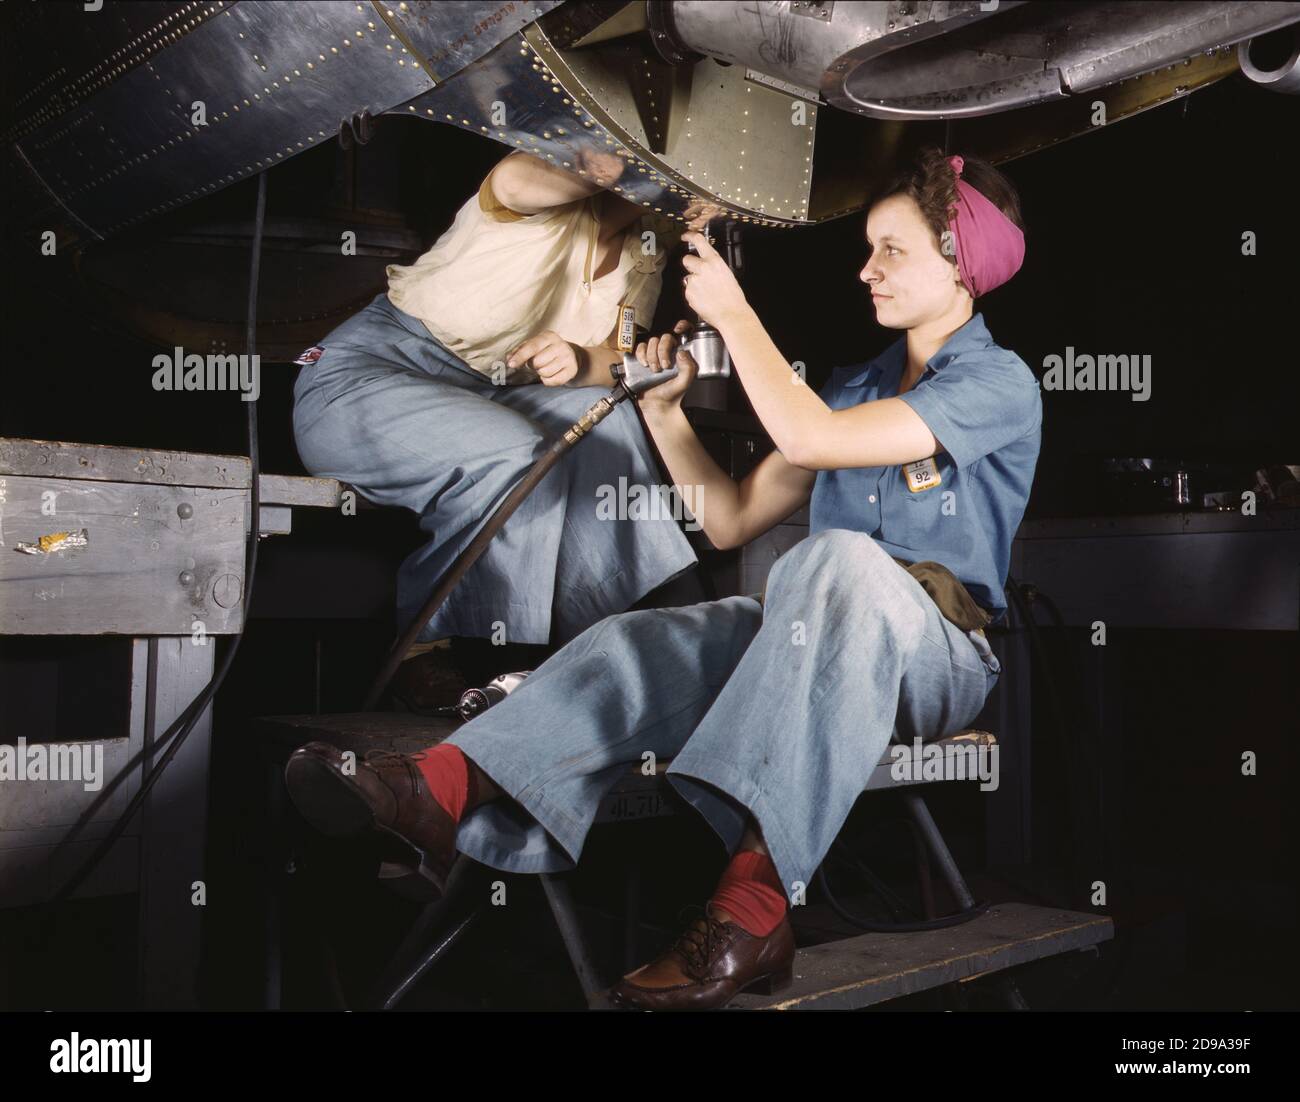 1942 , ottobre , Long Beach, California , USA : Donne al lavoro sul bombardiere, Douglas Aircraft Company . Foto di Alfred T. Palmer per l'Amministrazione della sicurezza agricola - Ufficio delle informazioni di guerra . - SECONDA GUERRA MONDIALE - SECONDA GUERRA MONDIALE - SECONDA GUERRA MONDIALE - SECONDA GUERRA MONDIALE - SECONDA GUERRA MONDIALE - FOTO STORICHE - FOTO STORICA - USA - STORIA FOTO - FABBRICA AVIOZIERE - BOMBARDIERE - AEREO - AEREO - AEREO - AVIAZIONE - AVIAZIONE - AVIAZIONE - AVIAZIONE - AEREI - AEREI - AEROPLANI - AEROPLANO - AVIAZIONE - STOCK - ANNI QUARANTA - '40 - CLASSE OPERAIA - operaie - CLASSE OPERAIA - lavoratori - fabbrica - fabbrica - INDUSTRIA - INDUSTRIA - INDUSTRIA - s Foto Stock